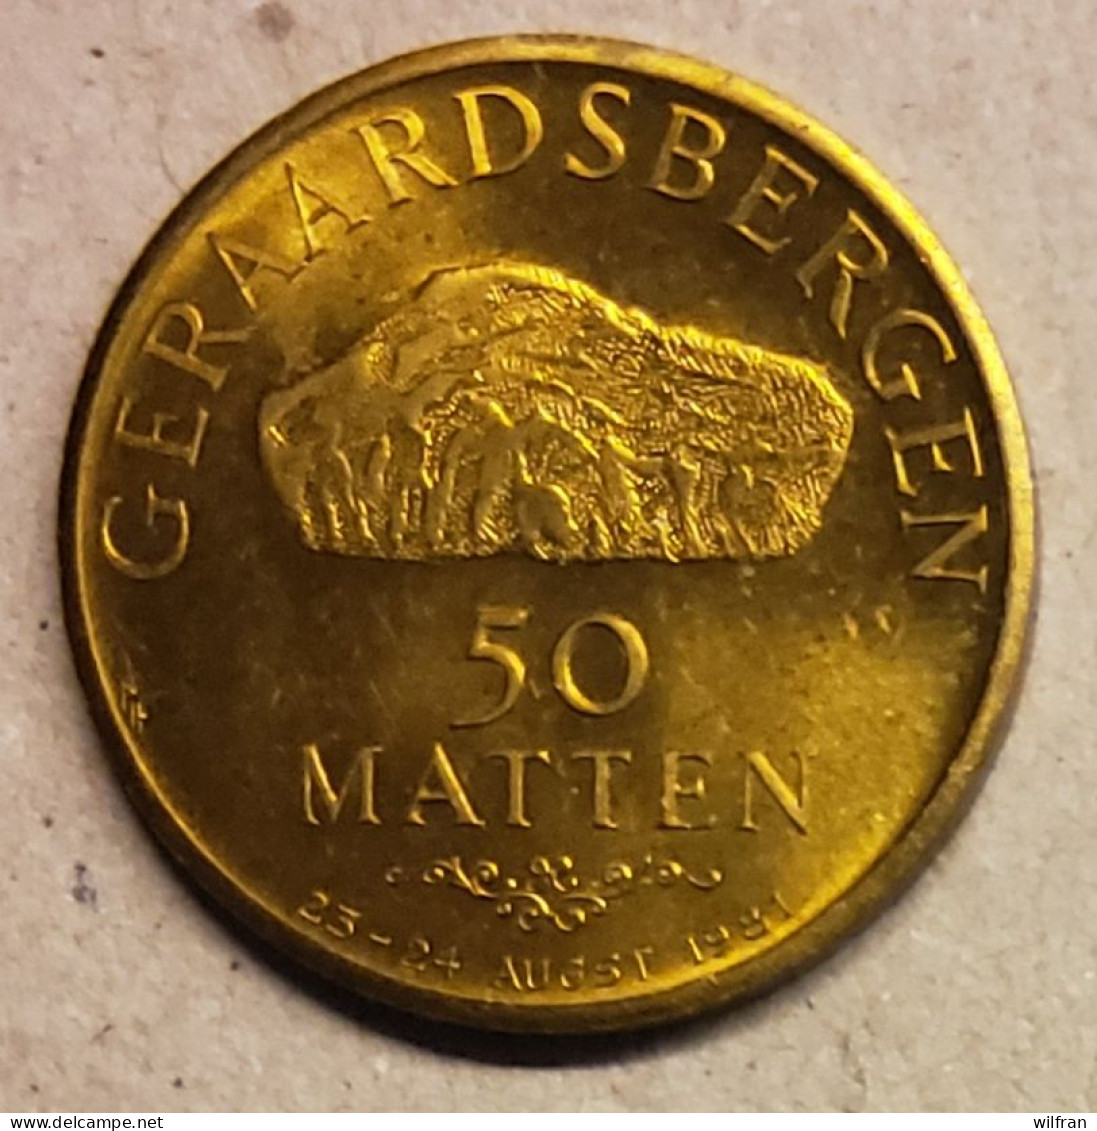 4528 Vz Geraardsbergen 50 Matten - Kz Manneken Pis Anno 1455 - Tokens Of Communes